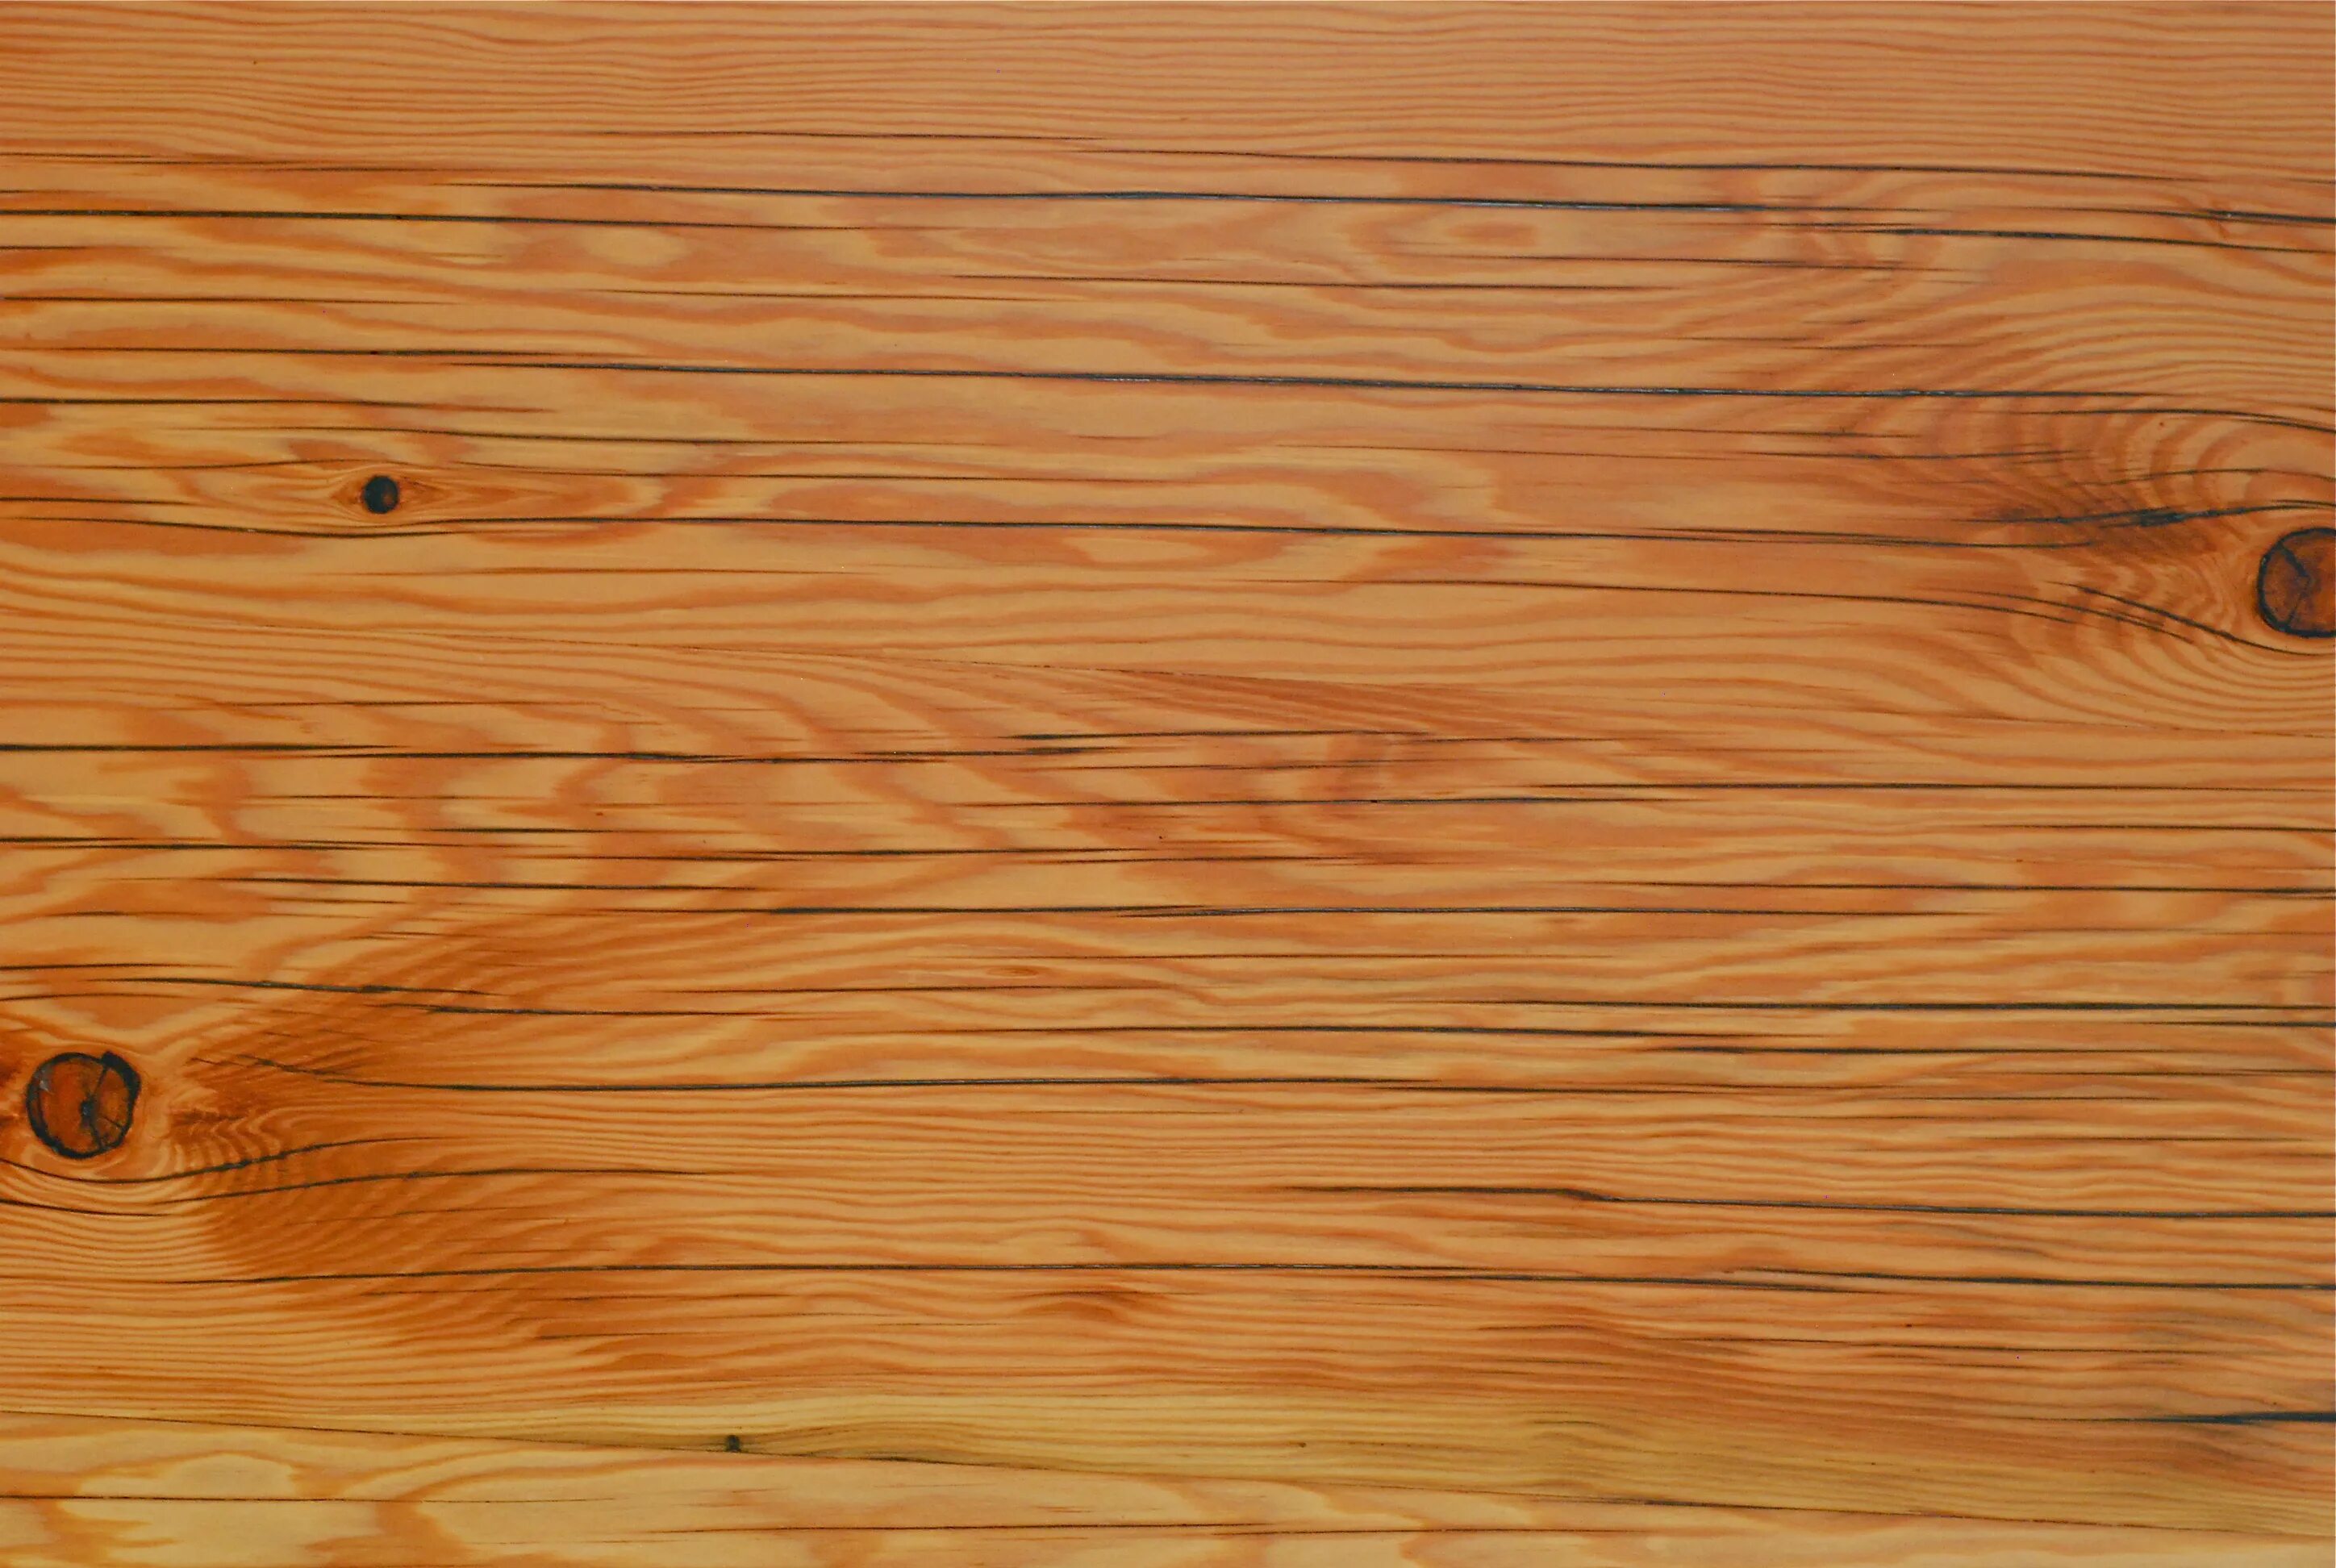 Wooden top. Фактура дерева. Деревянная текстура. Деревянный фон. Деревянная поверхность стола.